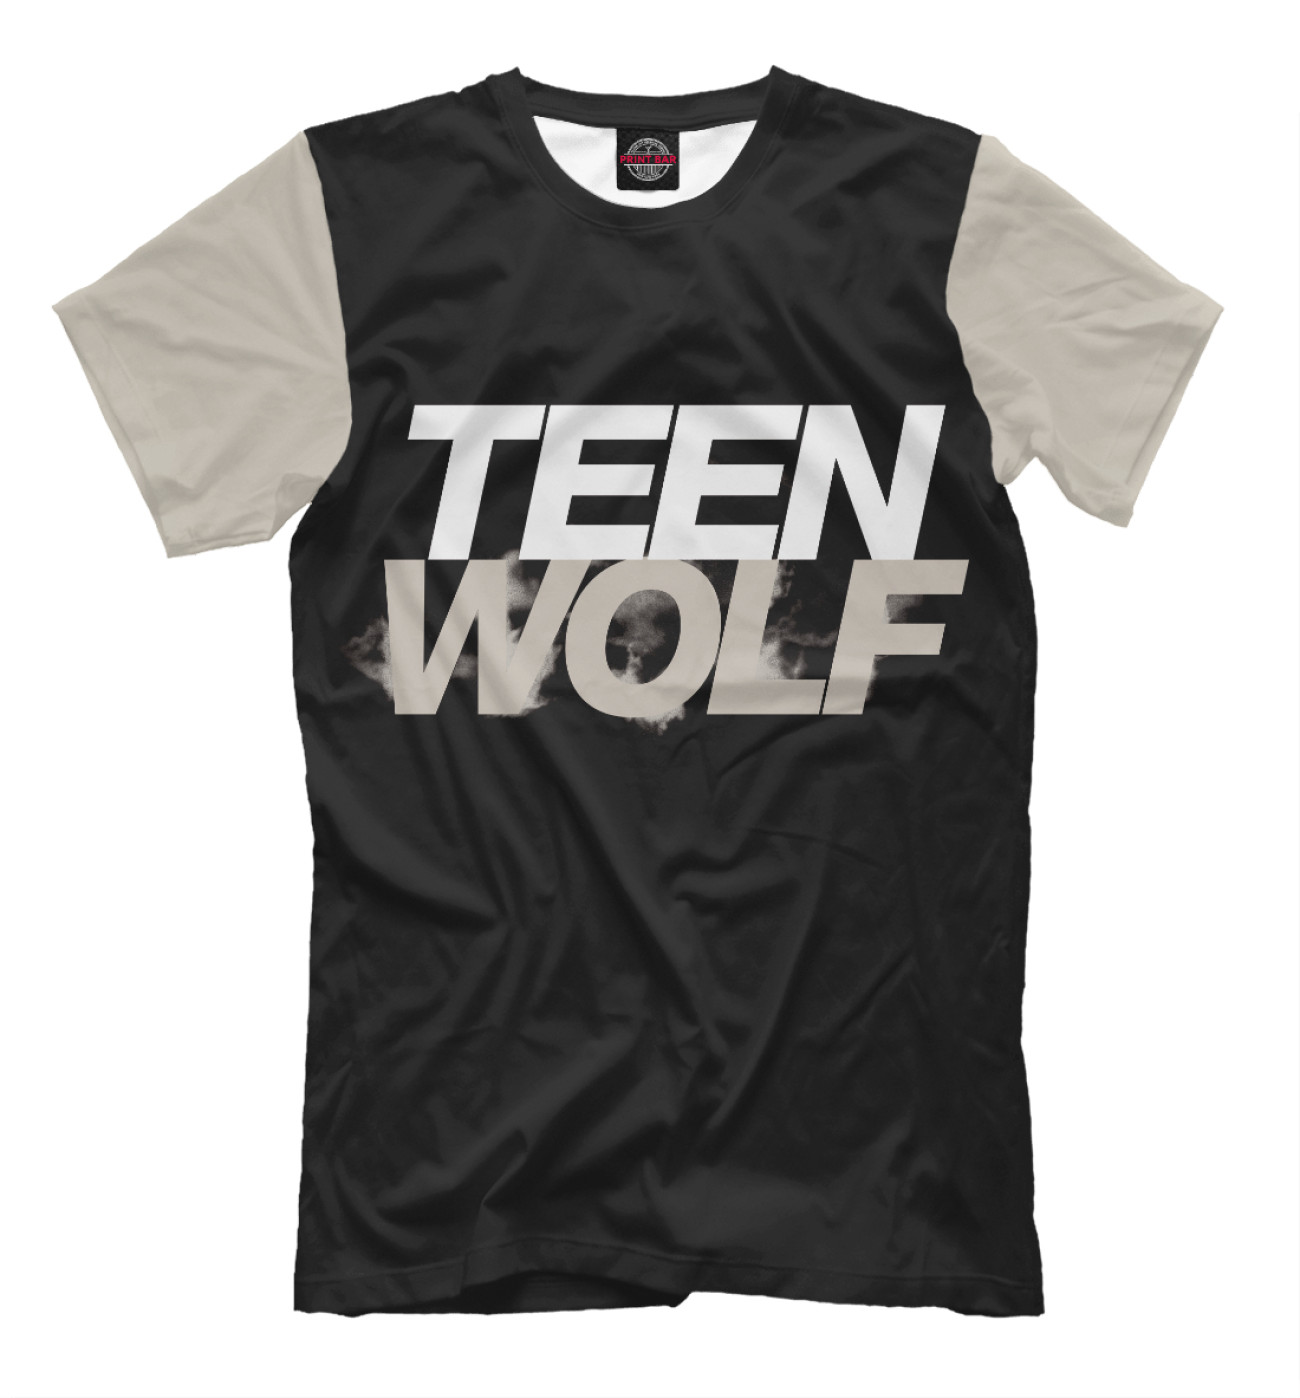 Мужская Футболка Teen Wolf, артикул: TWF-367139-fut-2